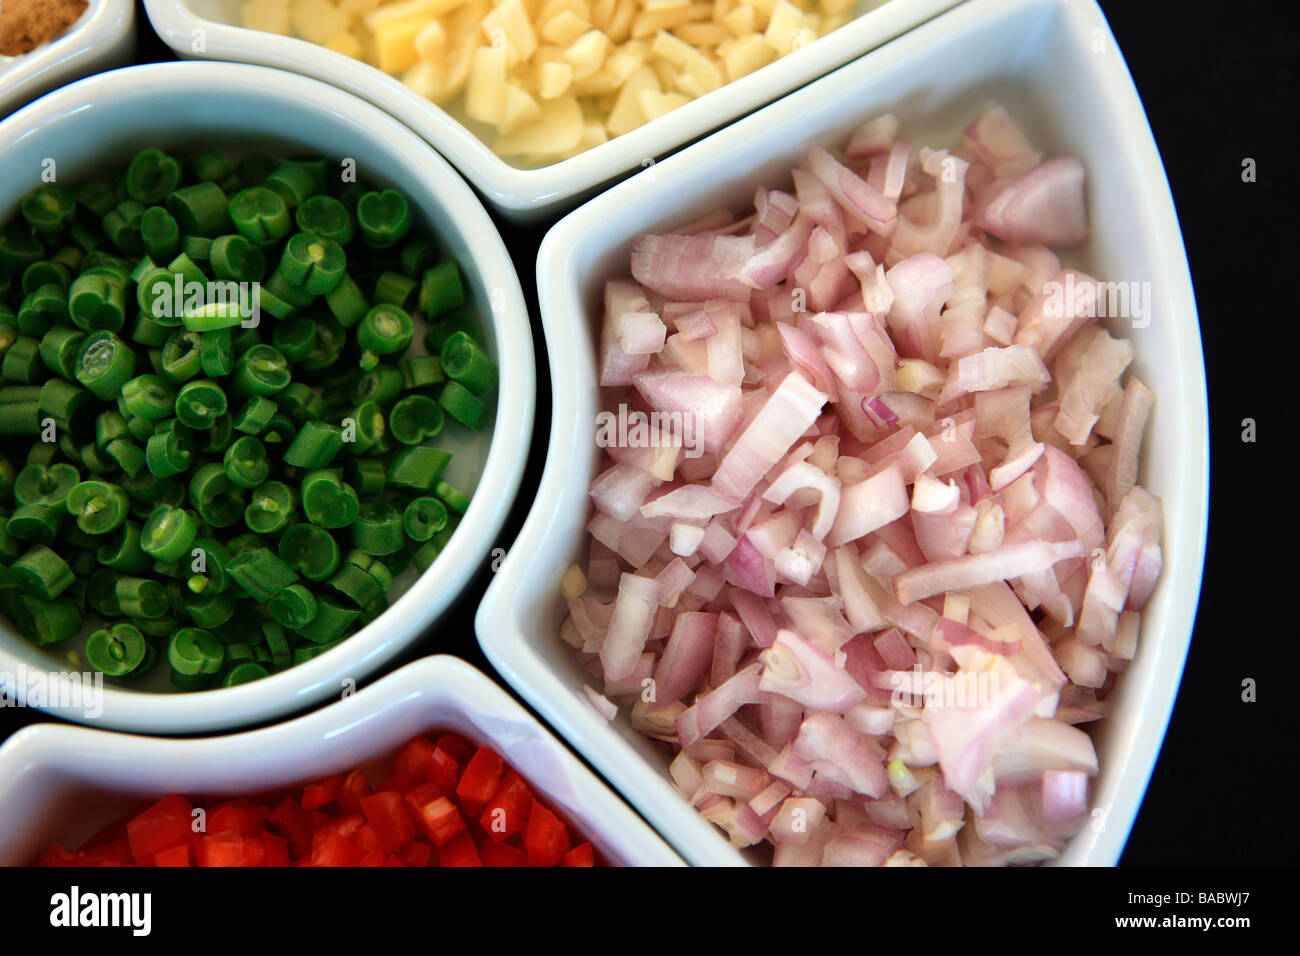 Les légumes dans une "lazy susan" prêt à être utilisé en cuisine Banque D'Images